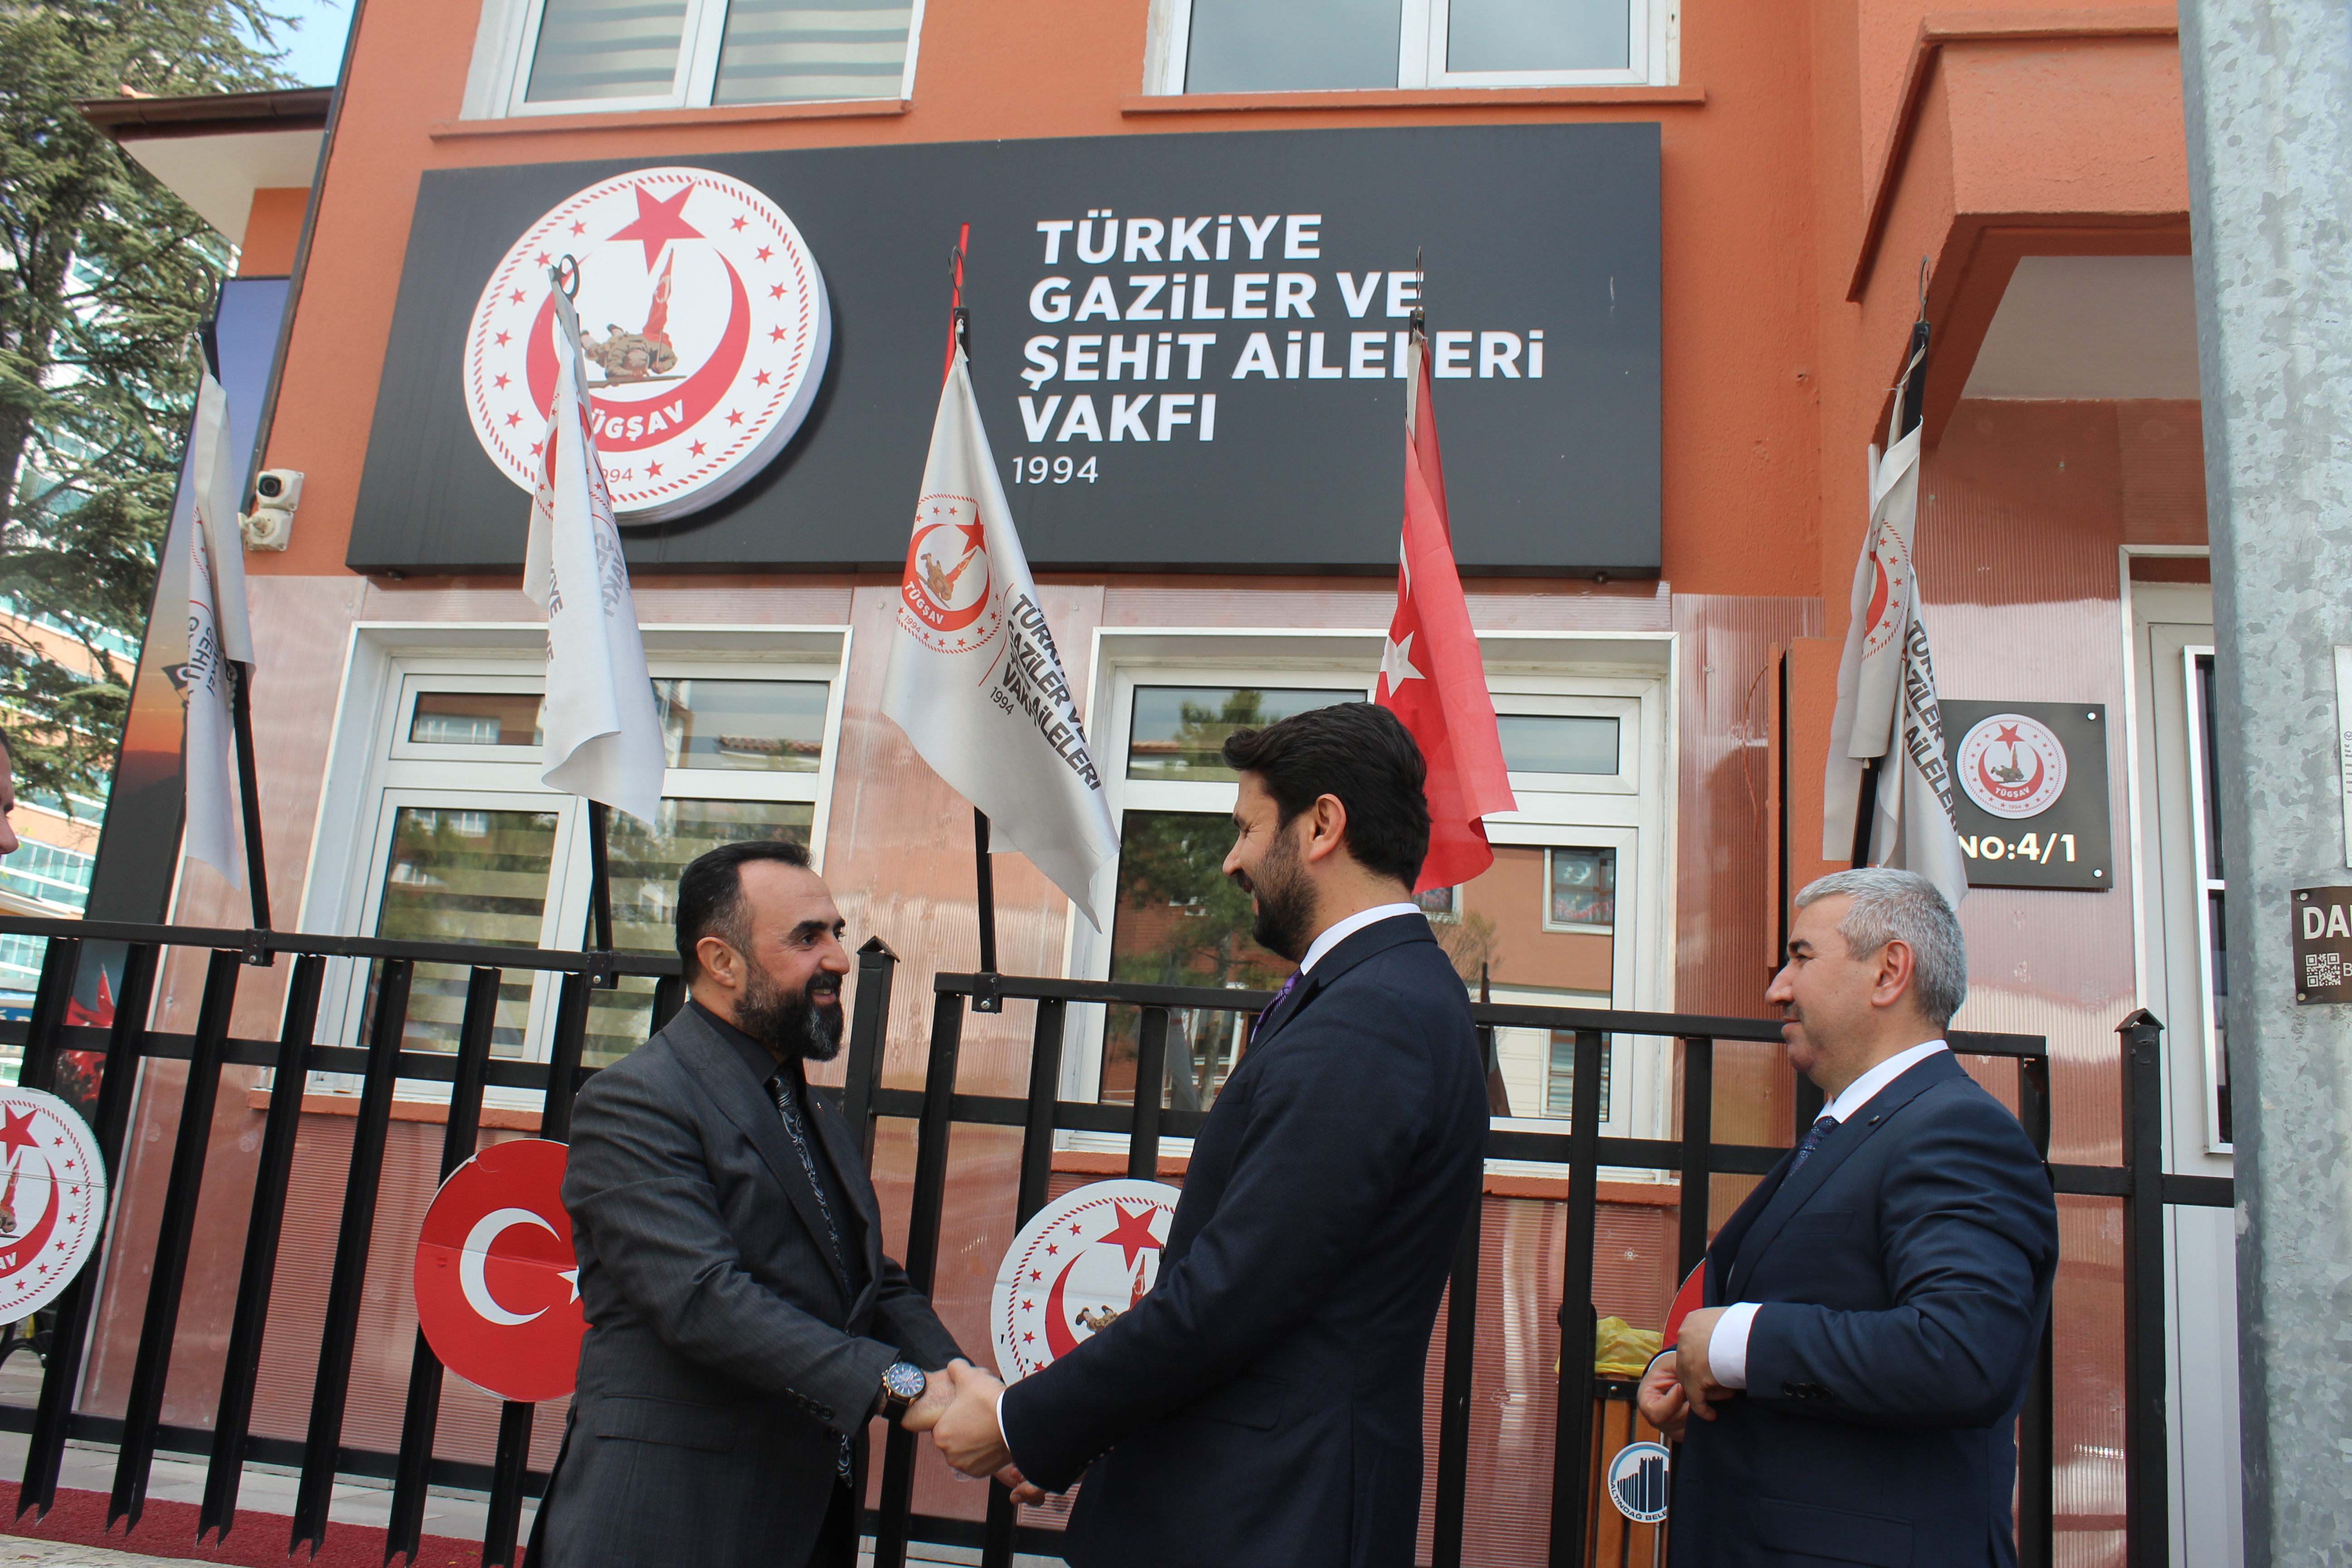 AK Parti Ankara 2. Bölge Milletvekili Adayı Sayın Kurtcan ÇELEBİ Vakfımızı ziyaret ederek Genel Başkanımız Gazi Lokman AYLAR ve kahraman gazilerimiz ile bir araya geldi.